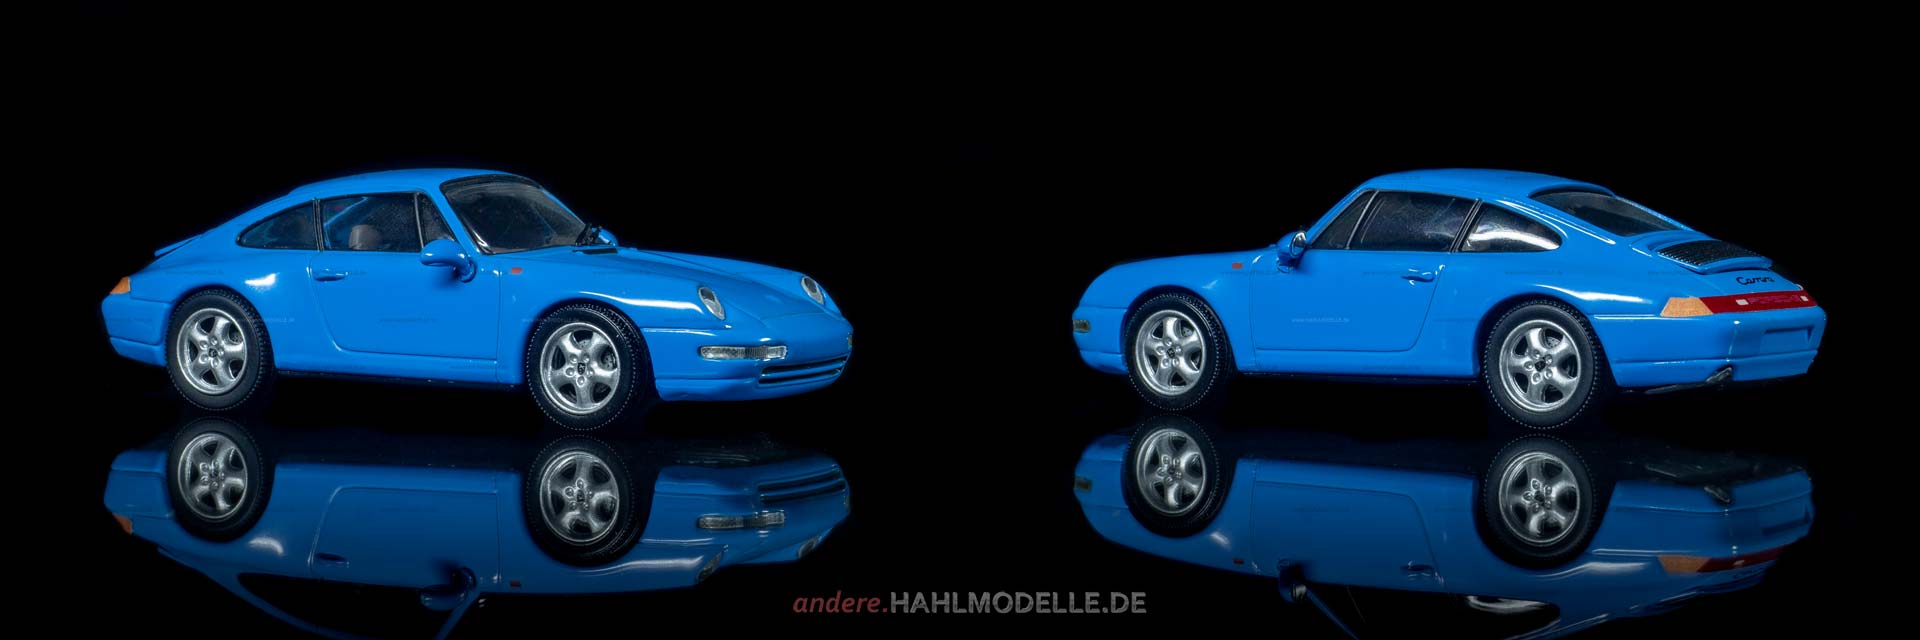 Porsche 911 (Typ 993) | Coupé | Minichamps | www.andere.hahlmodelle.de